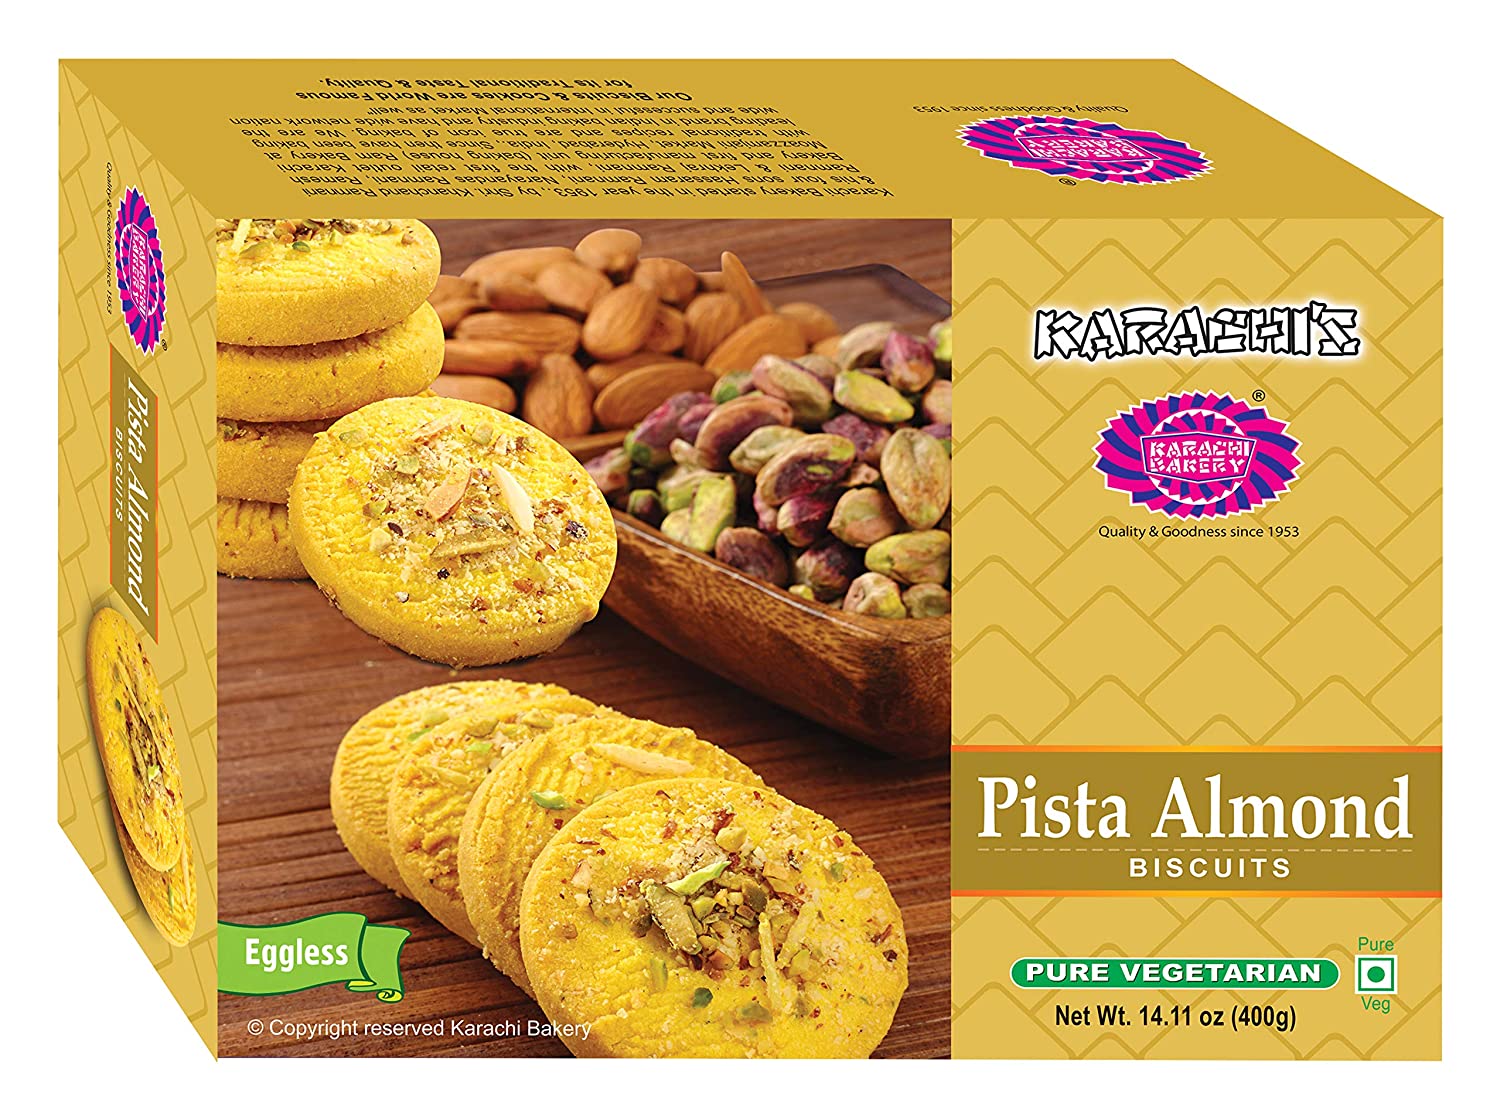 Karachi Premium Pista Almond Biscuits 400g